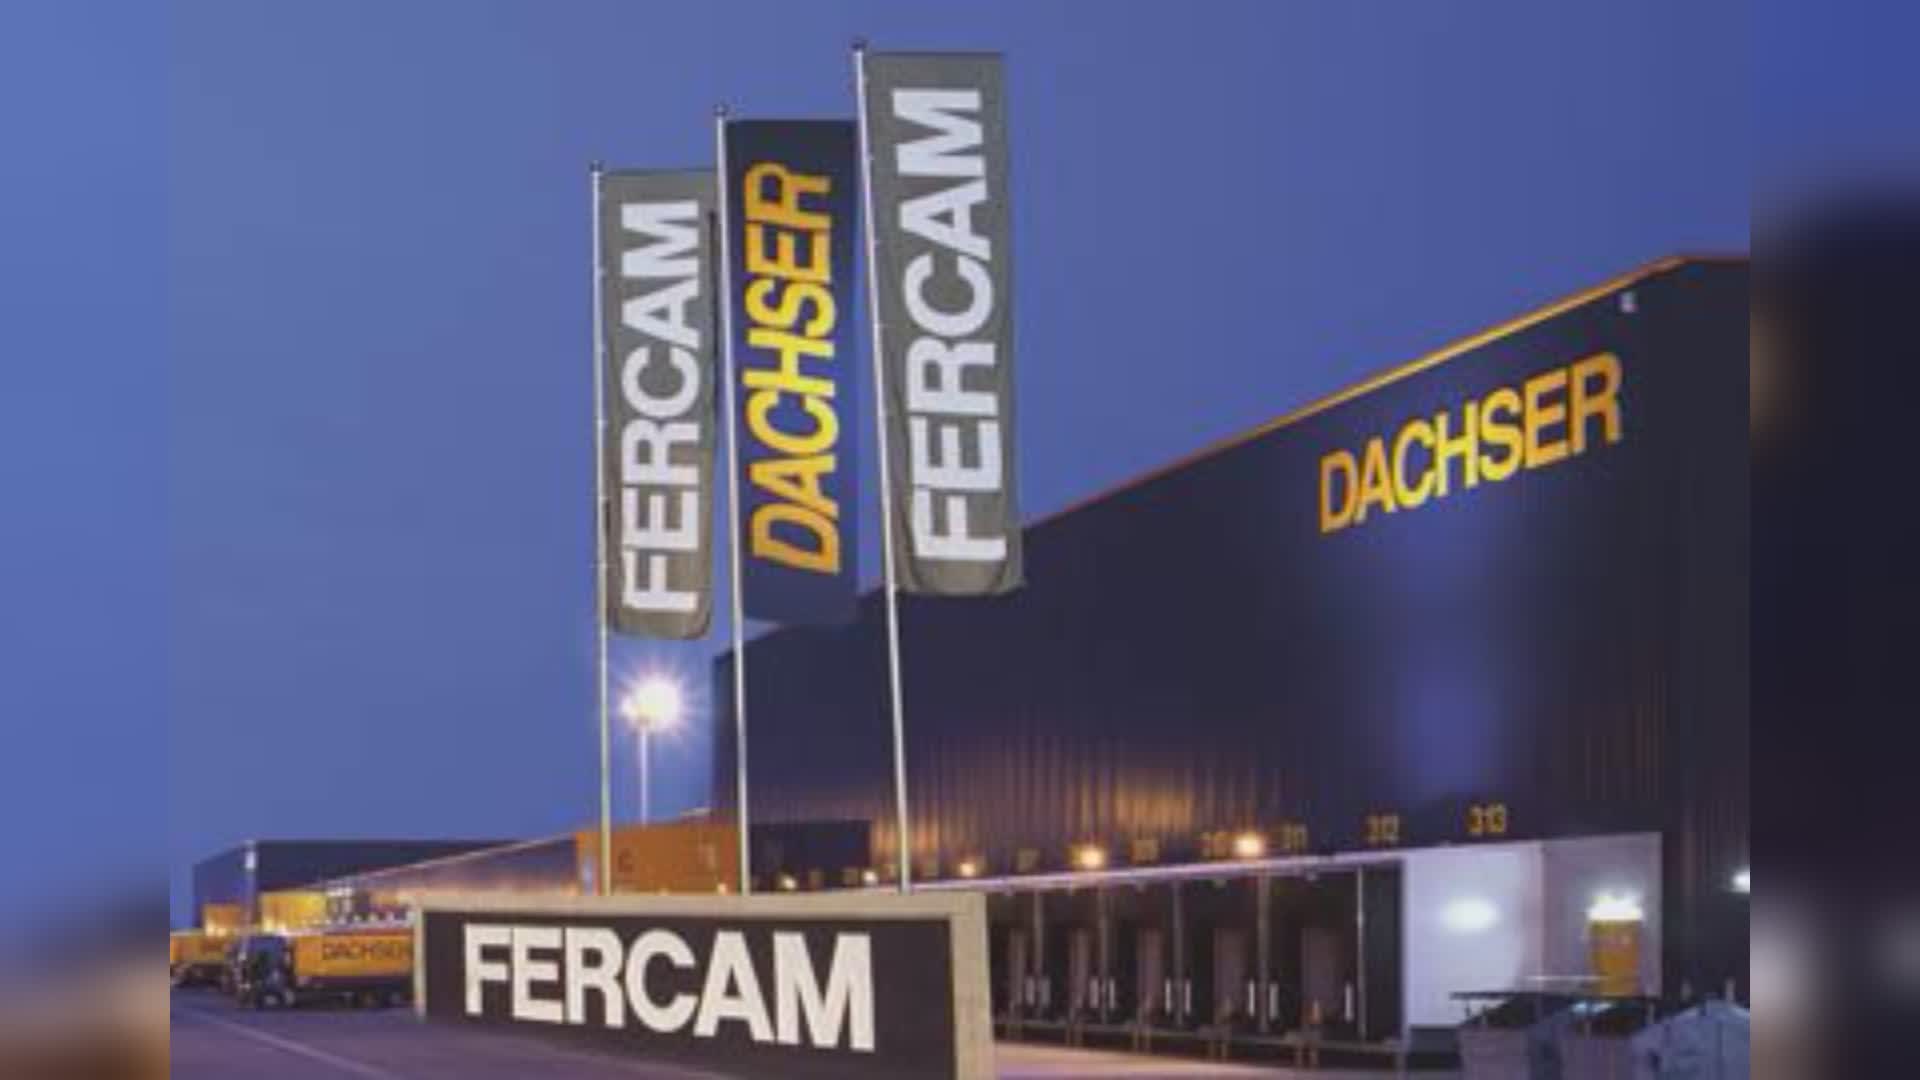 Fercam e Dachser rafforzano la presenza sul mercato del groupage nazionale e internazionale e della logistica